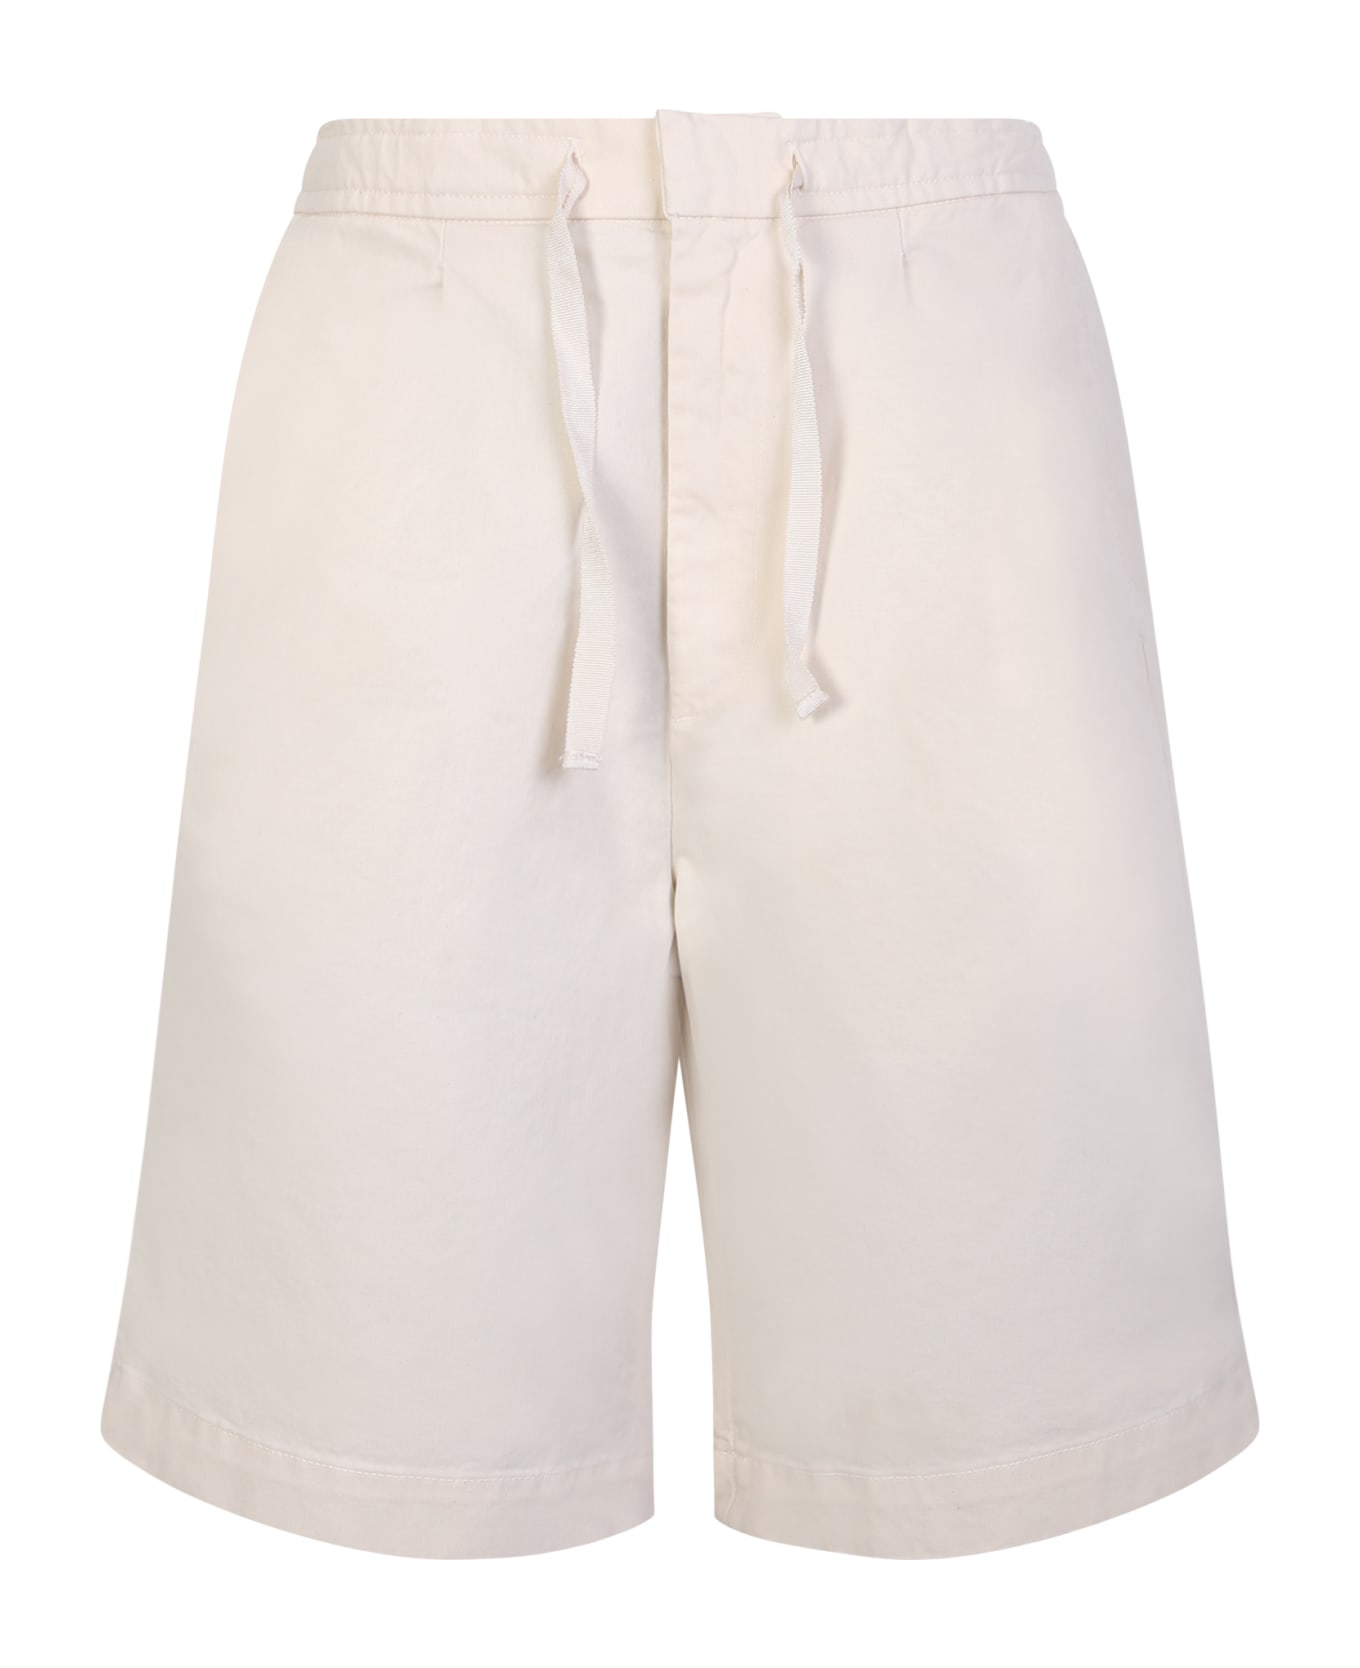 Officine Générale Light Beige Cotton Shorts - Beige ショートパンツ